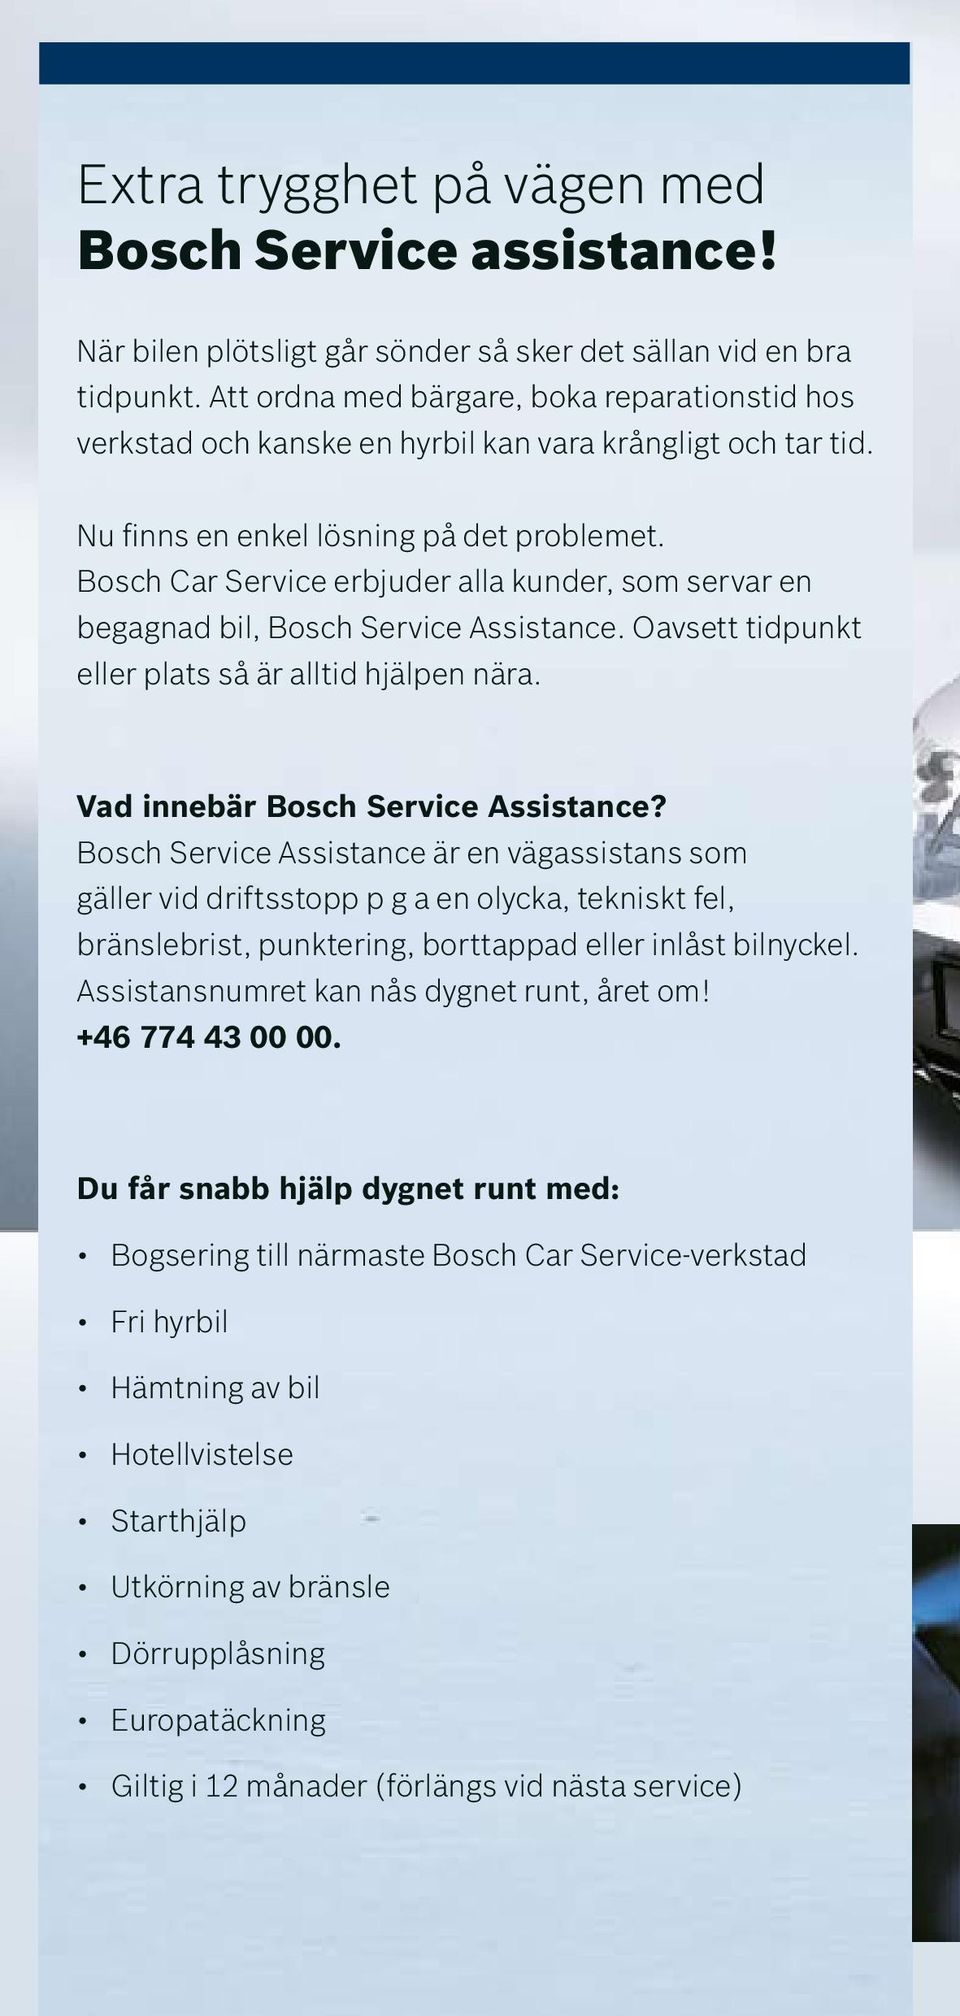 Bosch Car Service erbjuder alla kunder, som servar en begagnad bil, Bosch Service Assistance. Oavsett tidpunkt eller plats så är alltid hjälpen nära. Vad innebär Bosch Service Assistance?